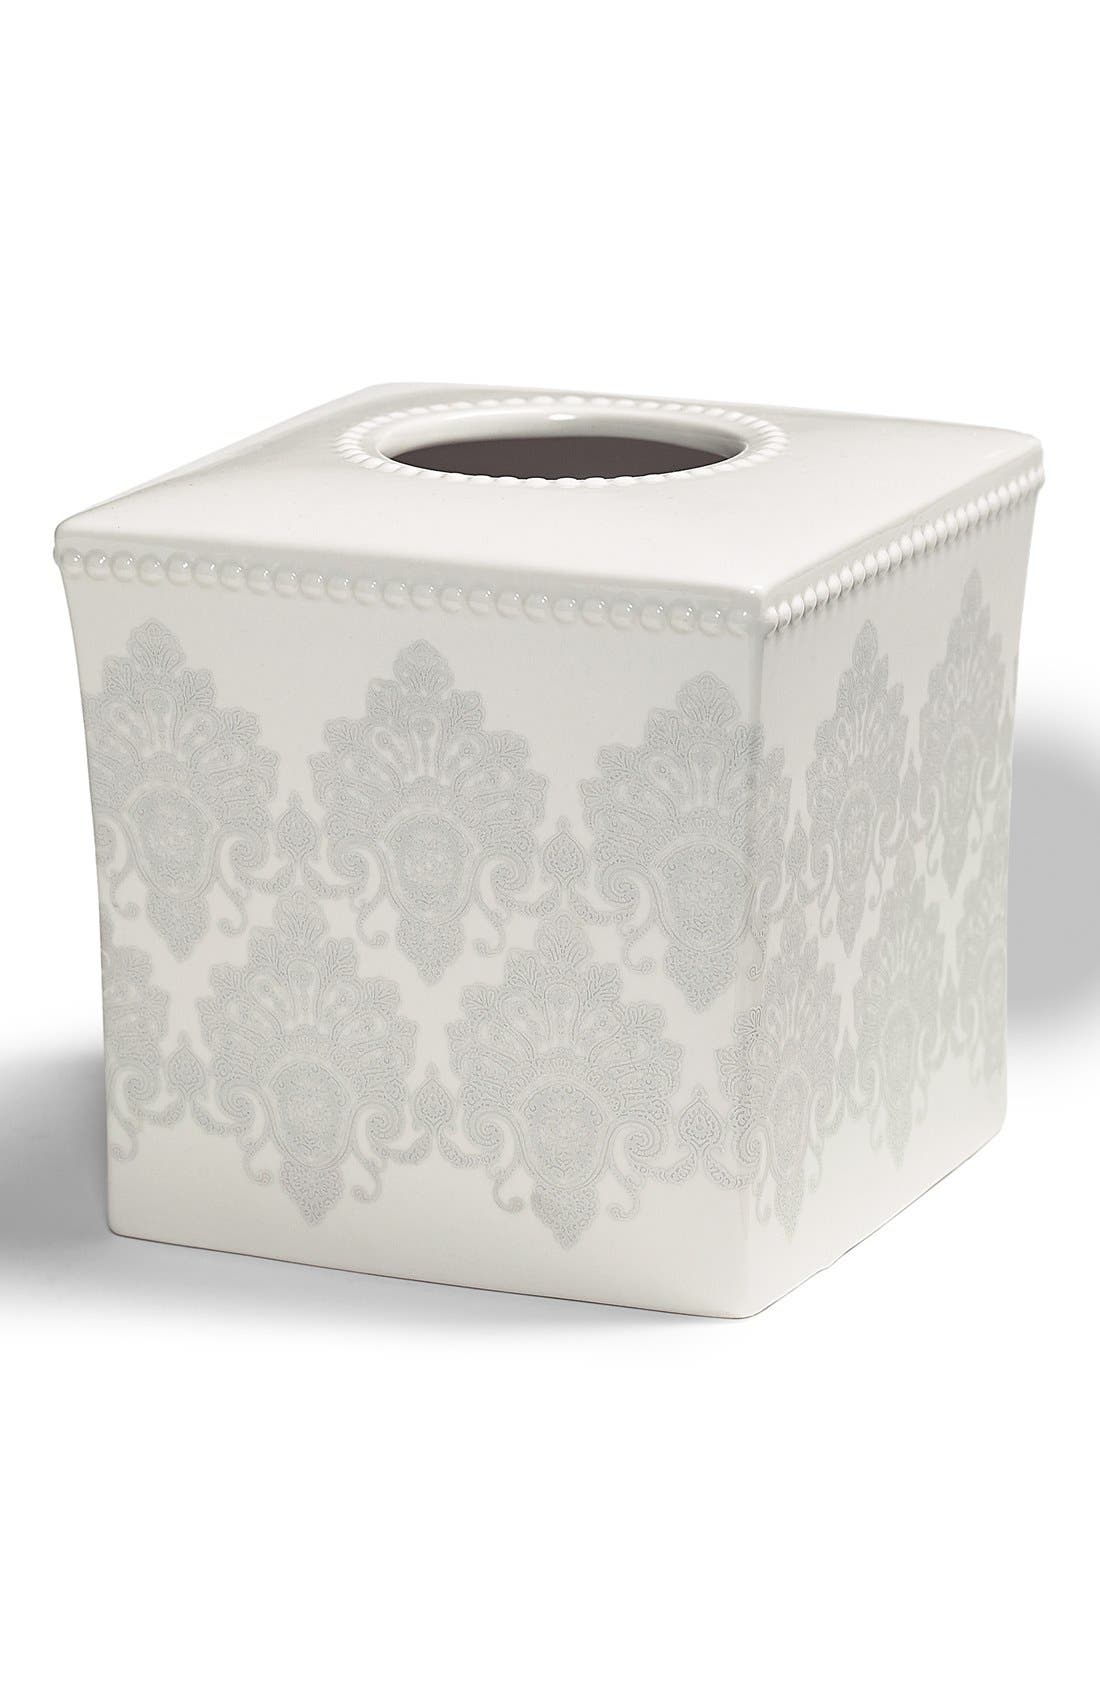 white porcelain tissue box cover